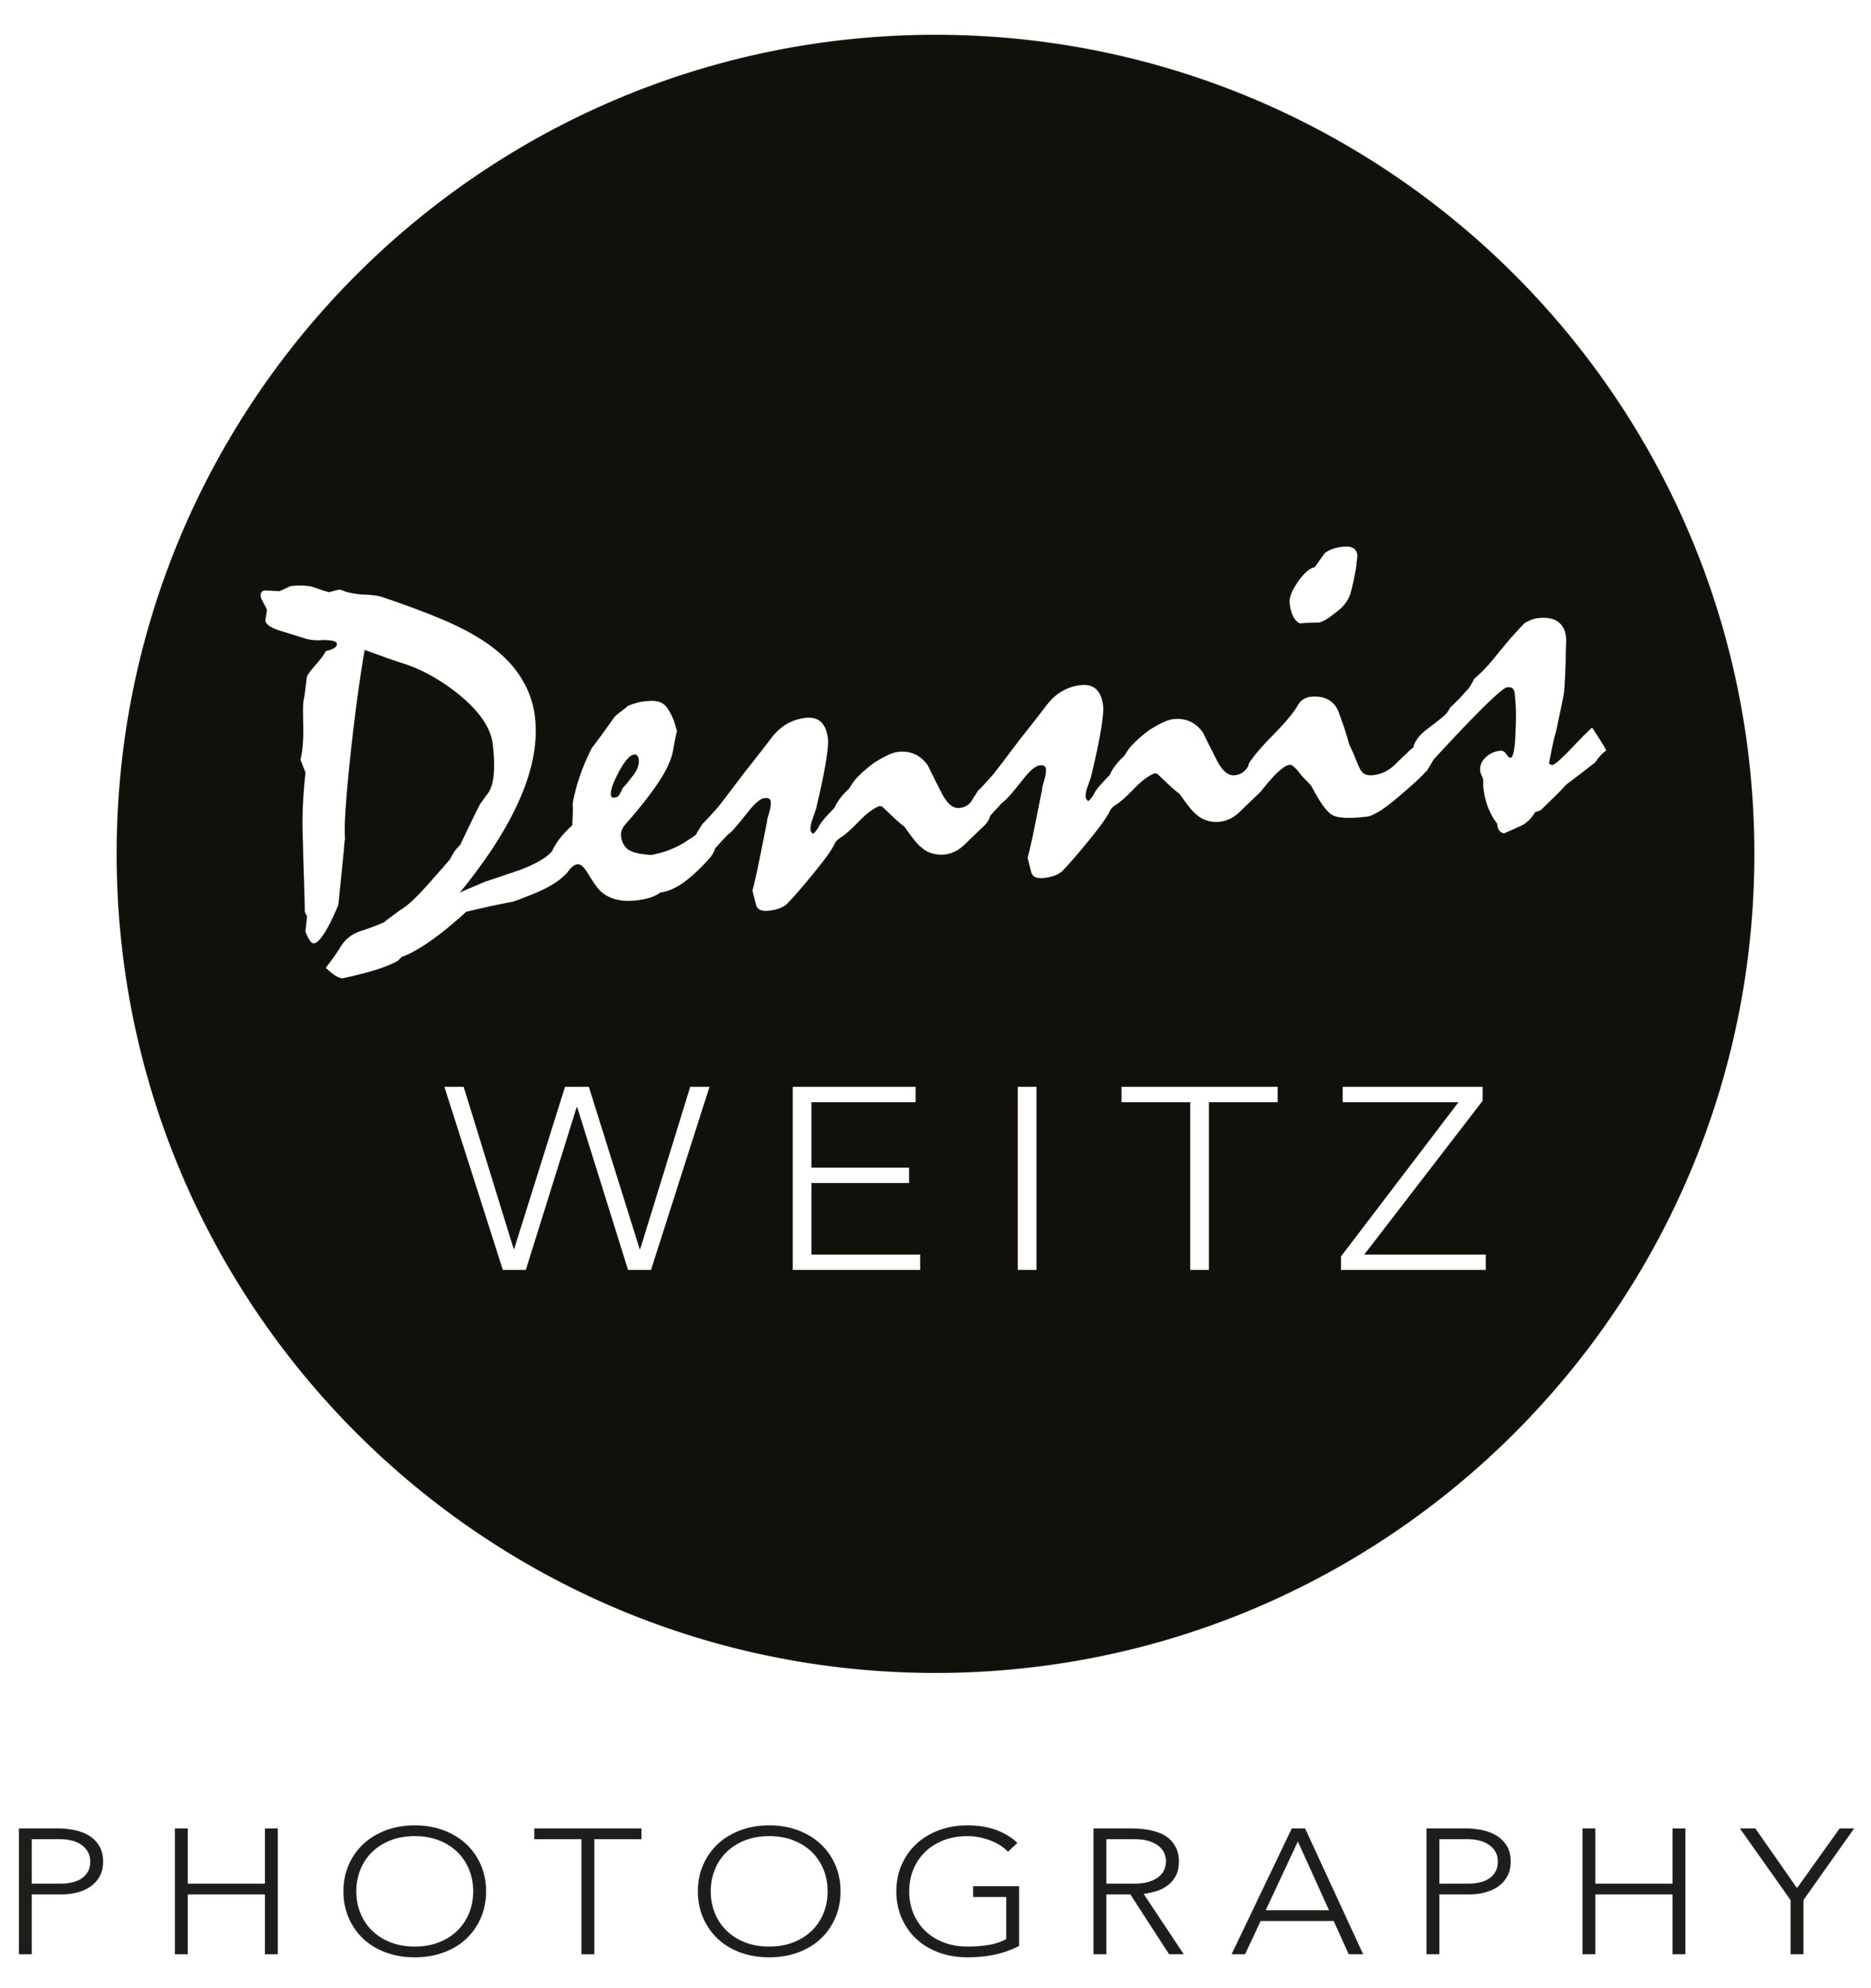 Dennis Weitz Photography